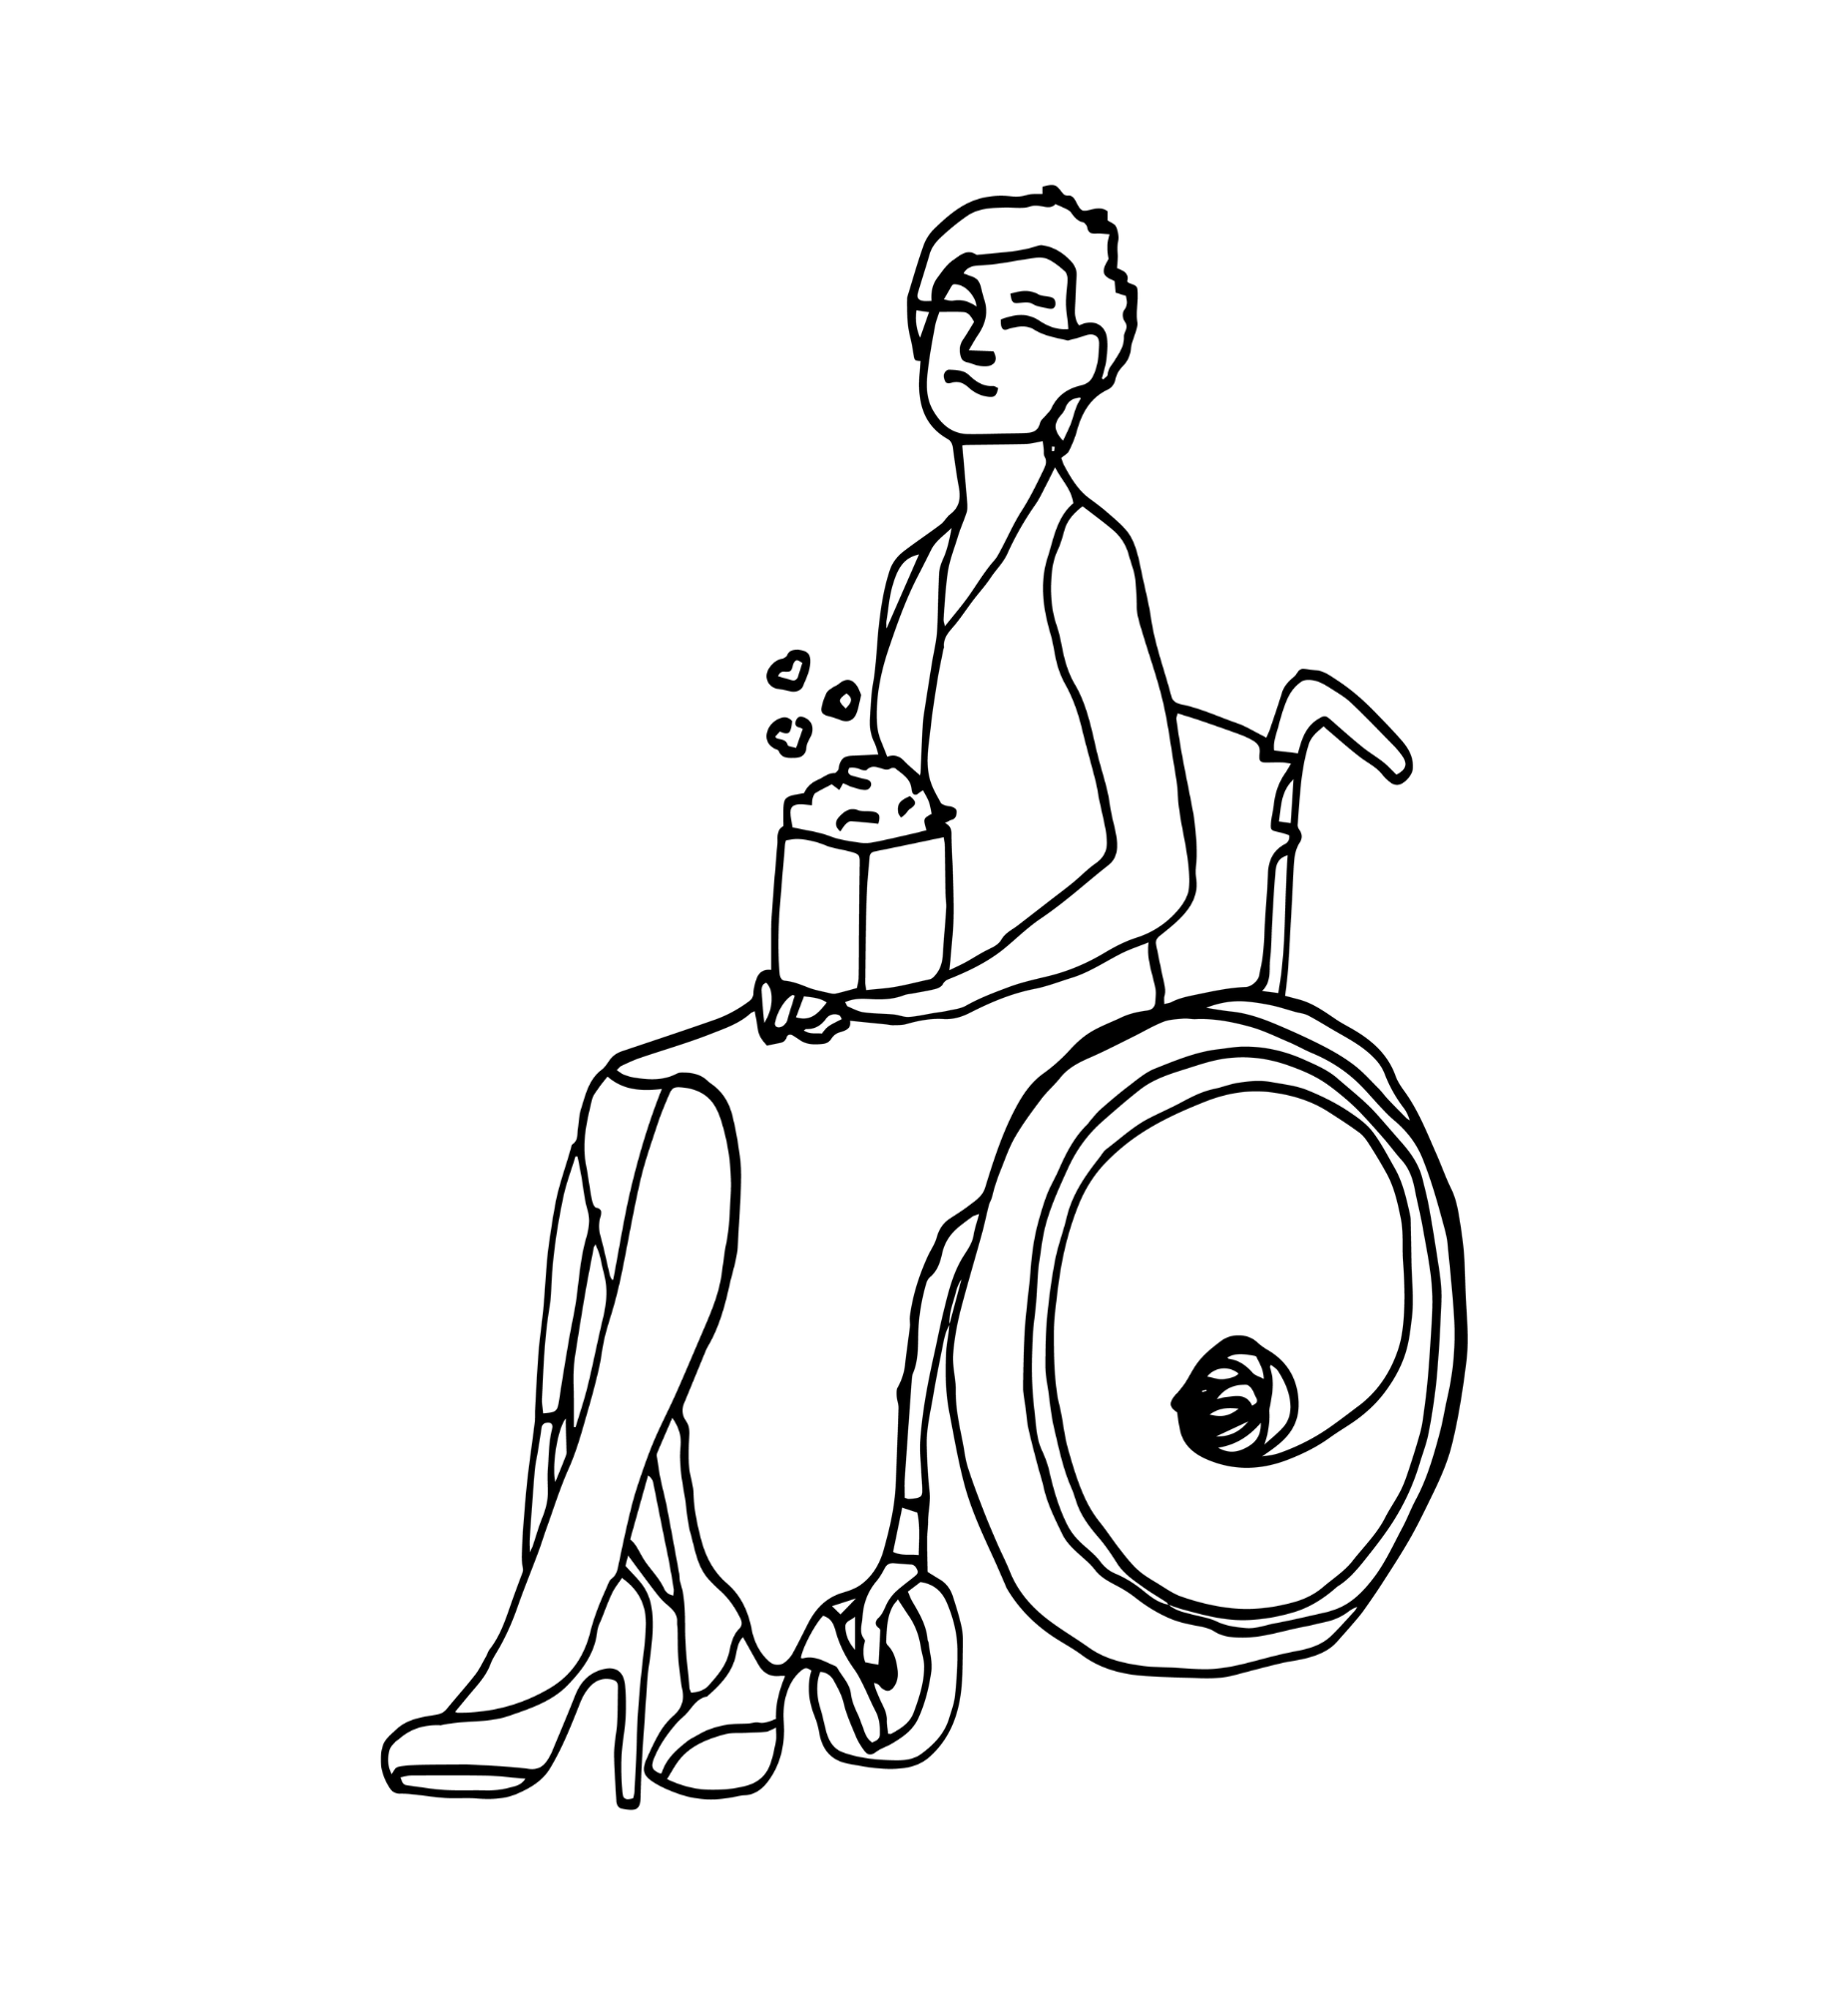 Na grafice ikona kobiety na wózku z popcornem w dłoniach.